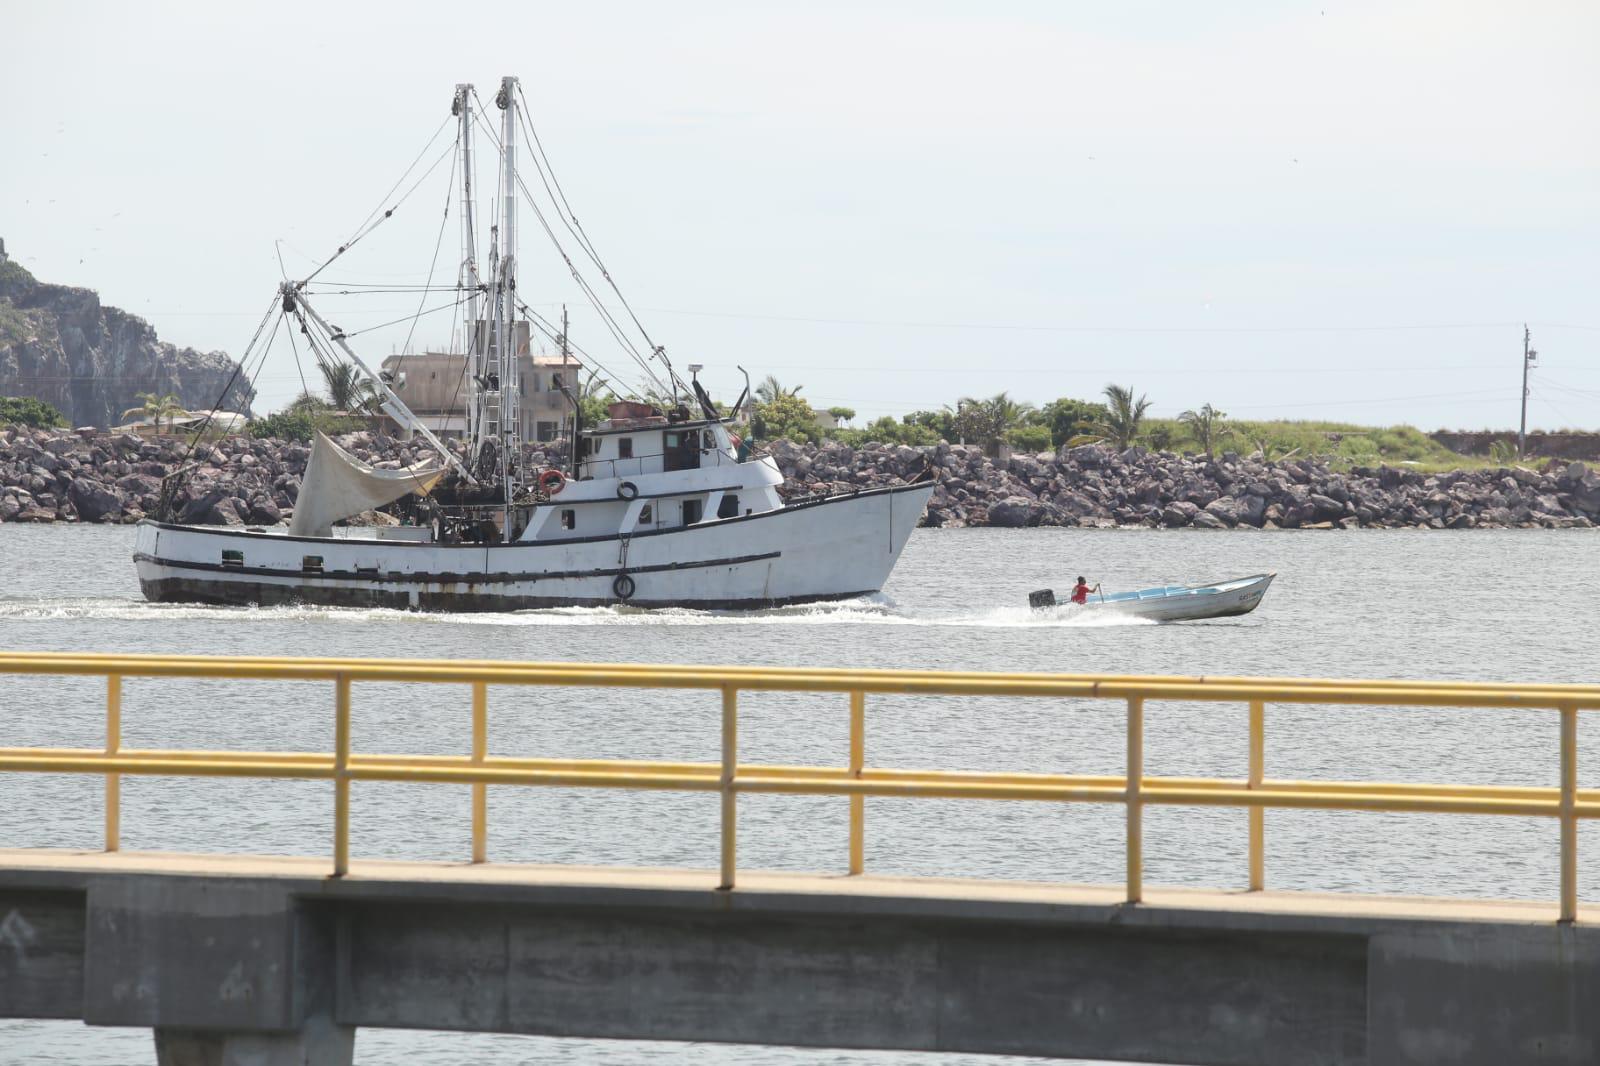 $!Salen barcos camaroneros de Mazatlán a altamar; familiares les desean buenas capturas